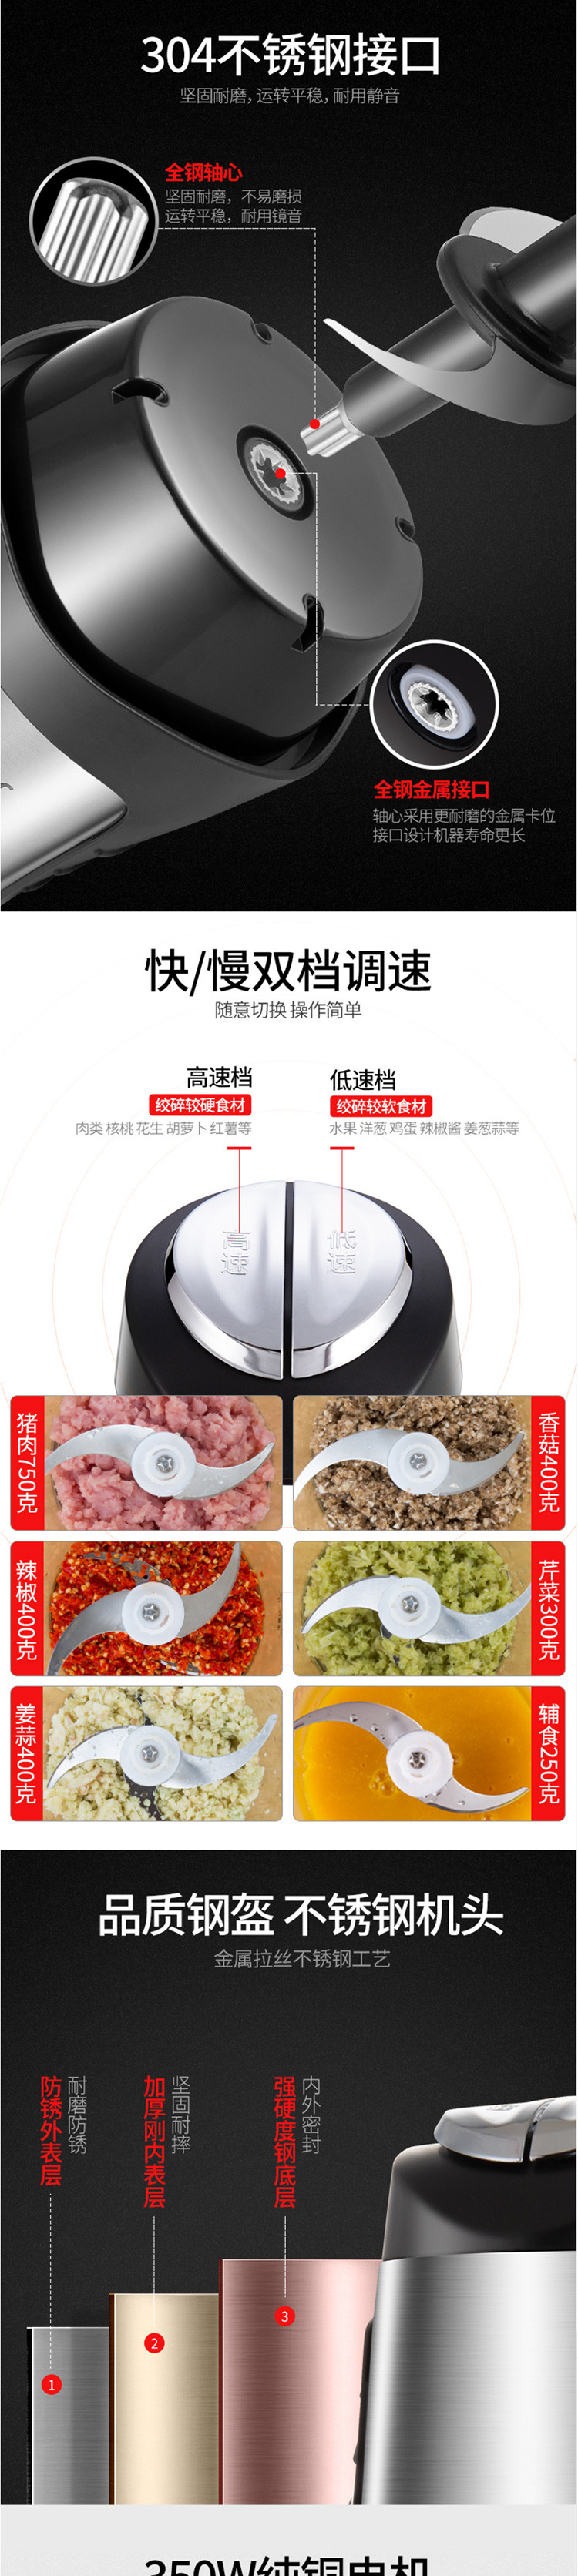 九阳/Joyoung 绞肉机多功能料理机 JYS-A960